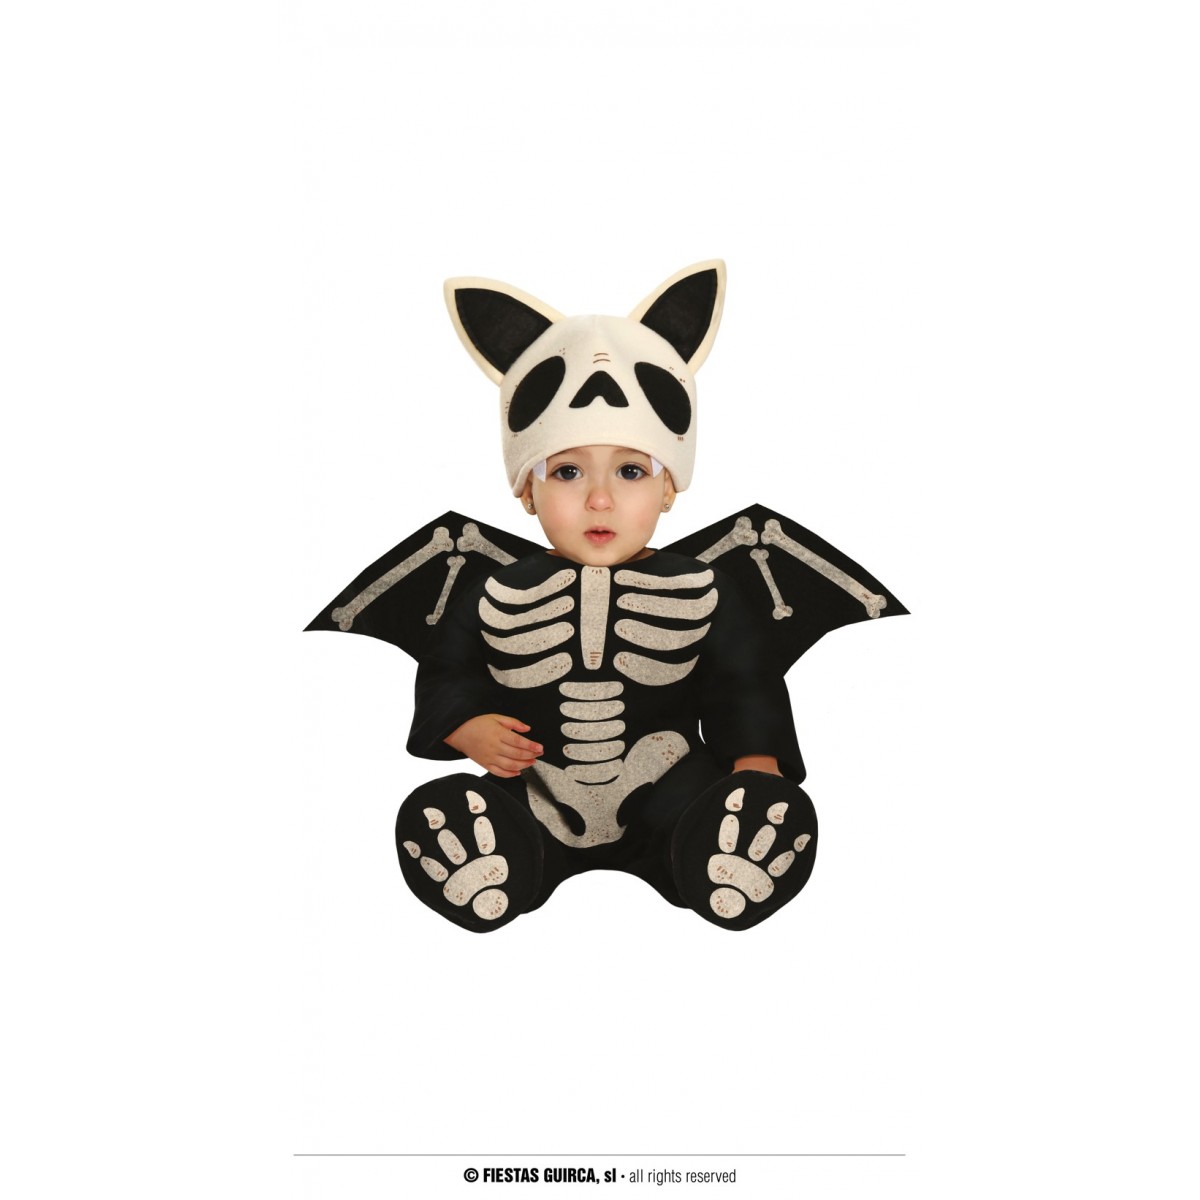 Costume neonato skeleton bat-contatti 0815262213